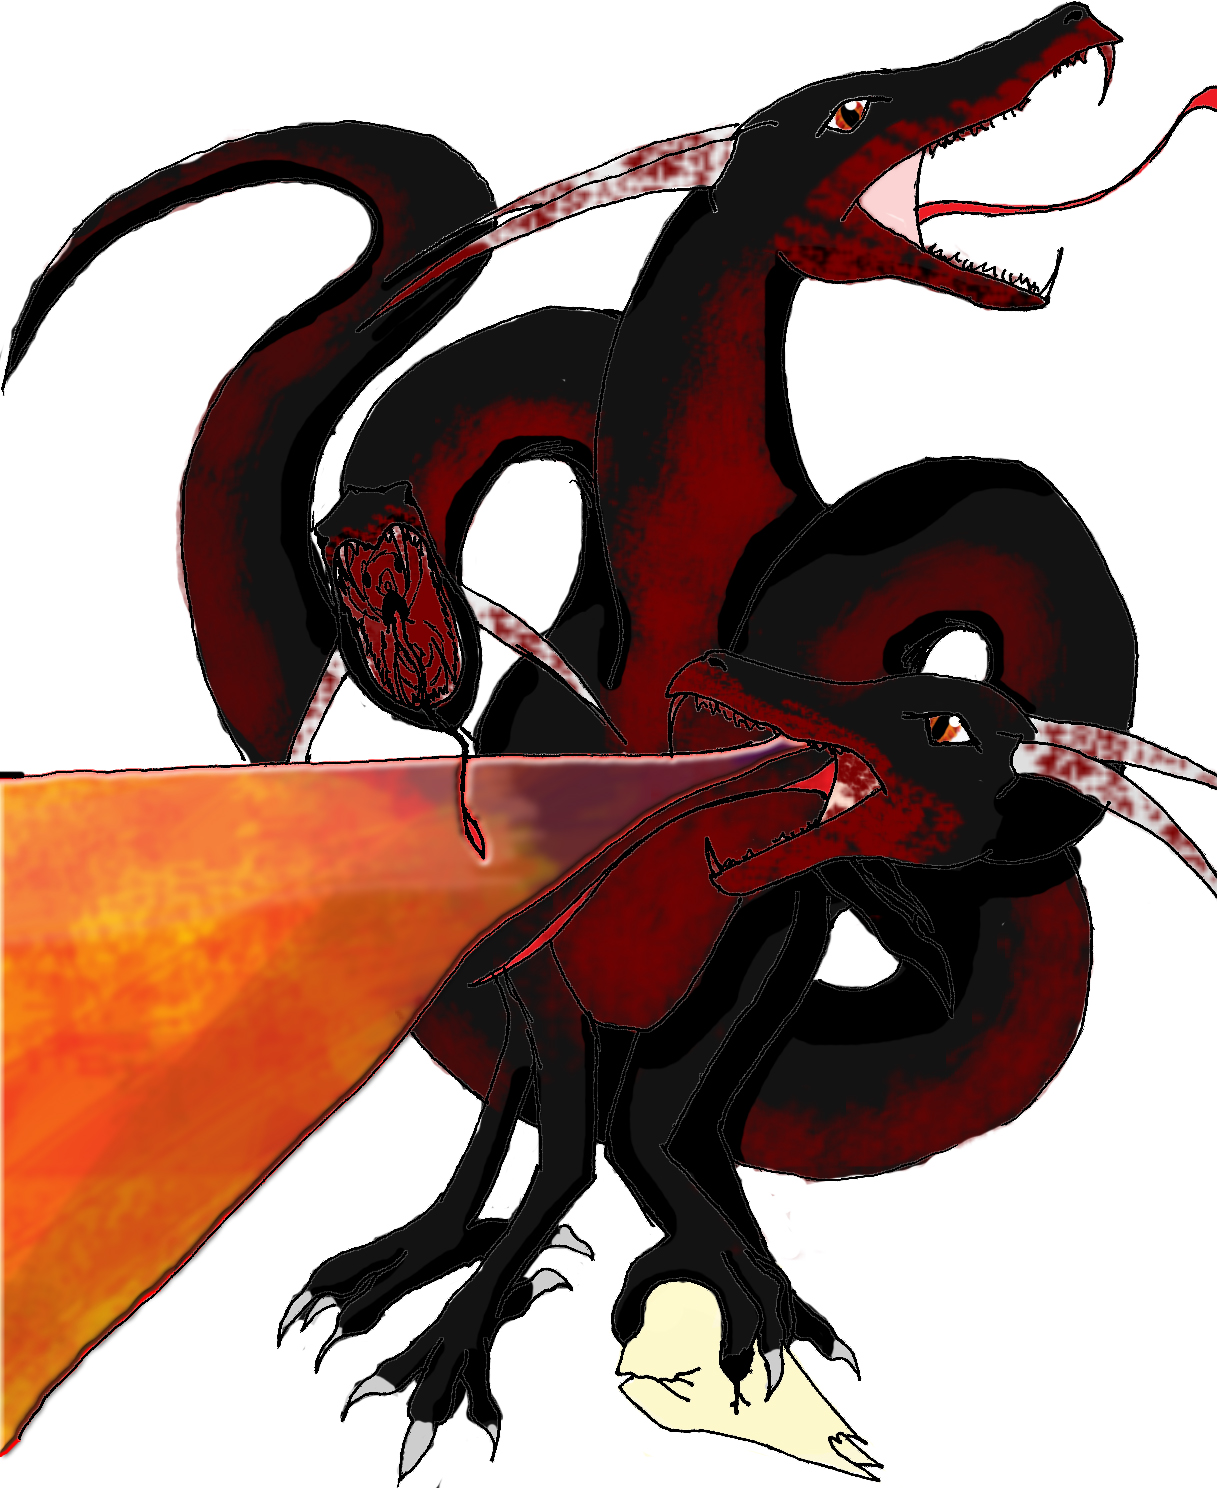 Hell Dragon by Sasuke_Uchiha1121